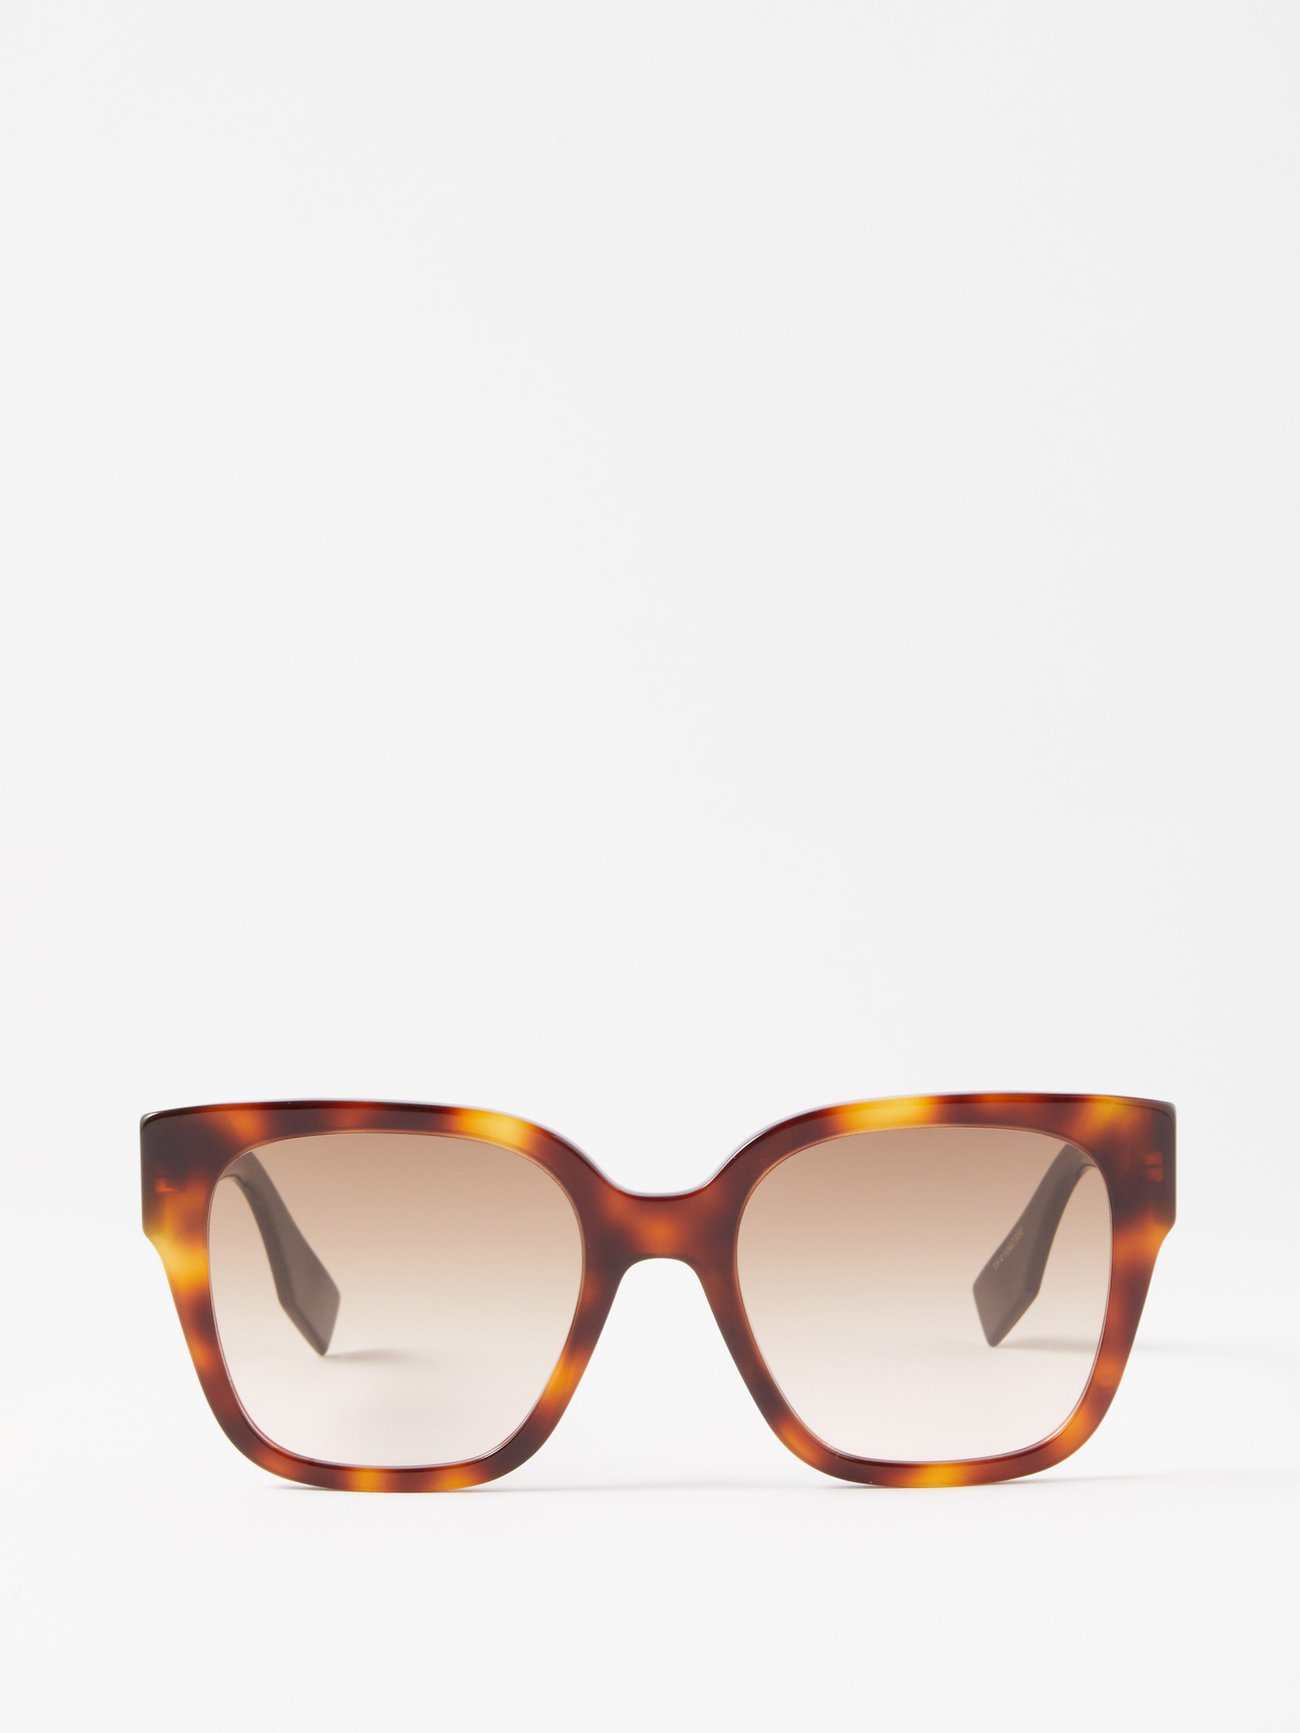 Fendi O'lock Cat-eye Acetate And Gold-tone Optical Glasses - Black -  ShopStyle Eyeglasses